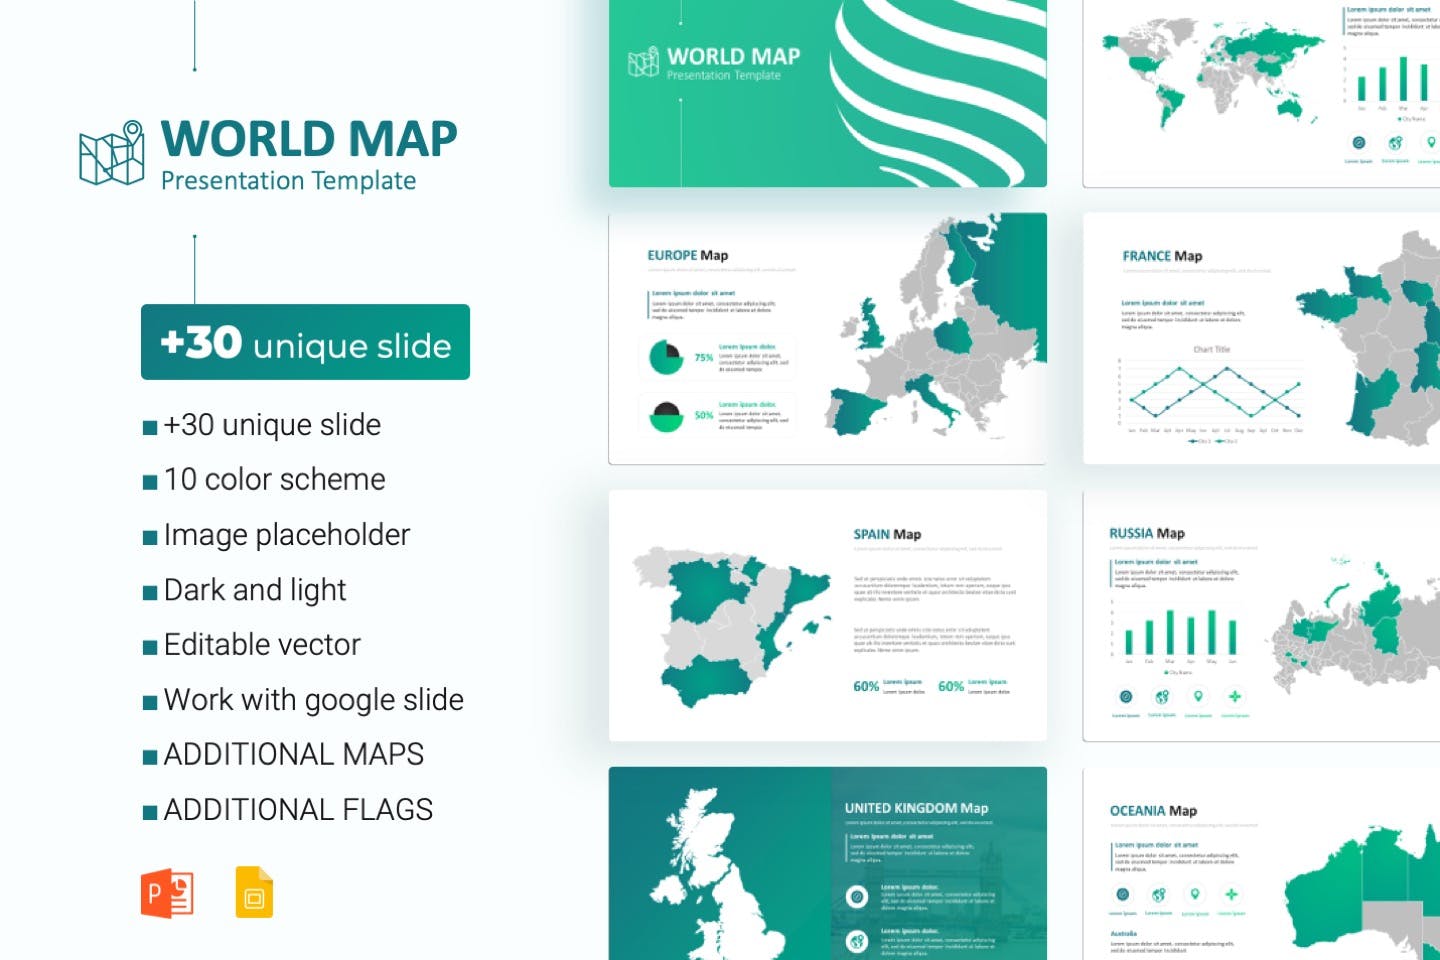 世界地图PPT幻灯片模板素材下载 World Maps powerpoint Template插图